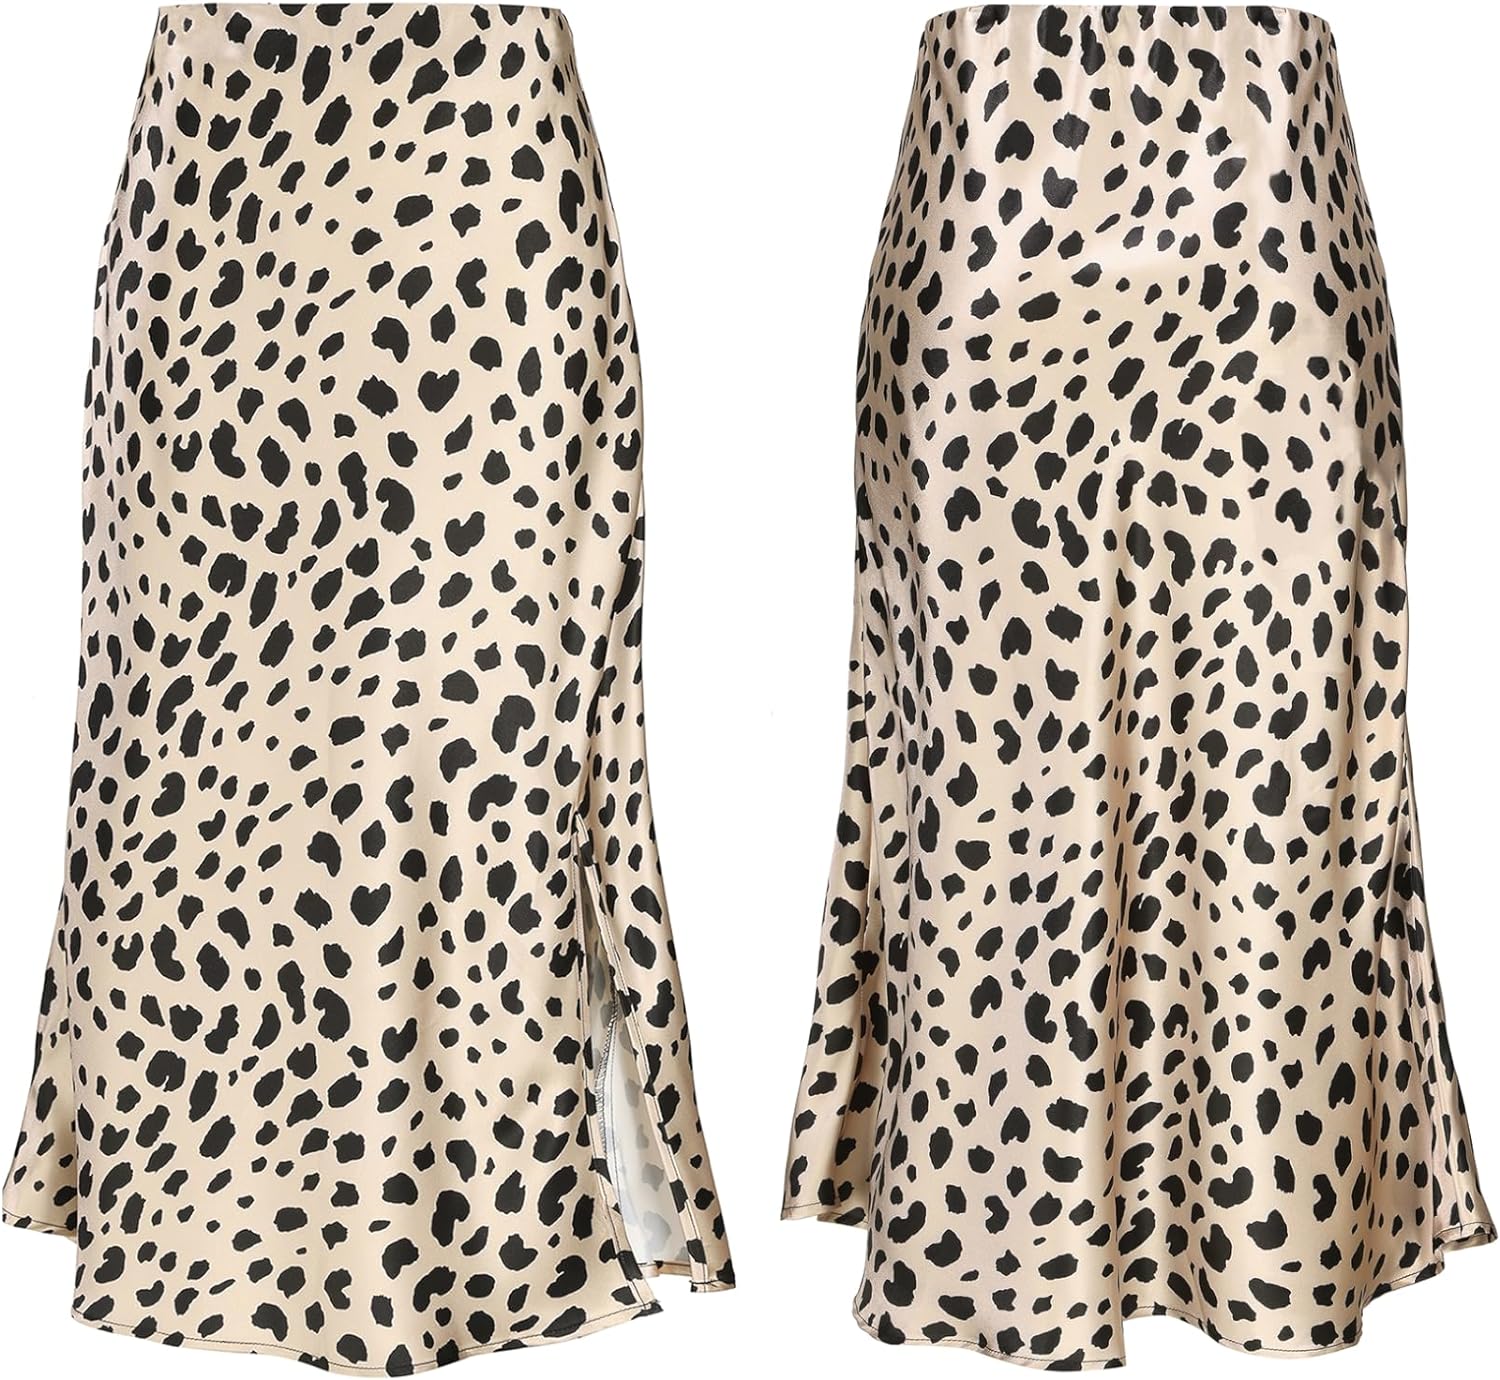 Women Satin Side Split Skirt High Waist Elastic Elegant A Line Midi Skirts for Women